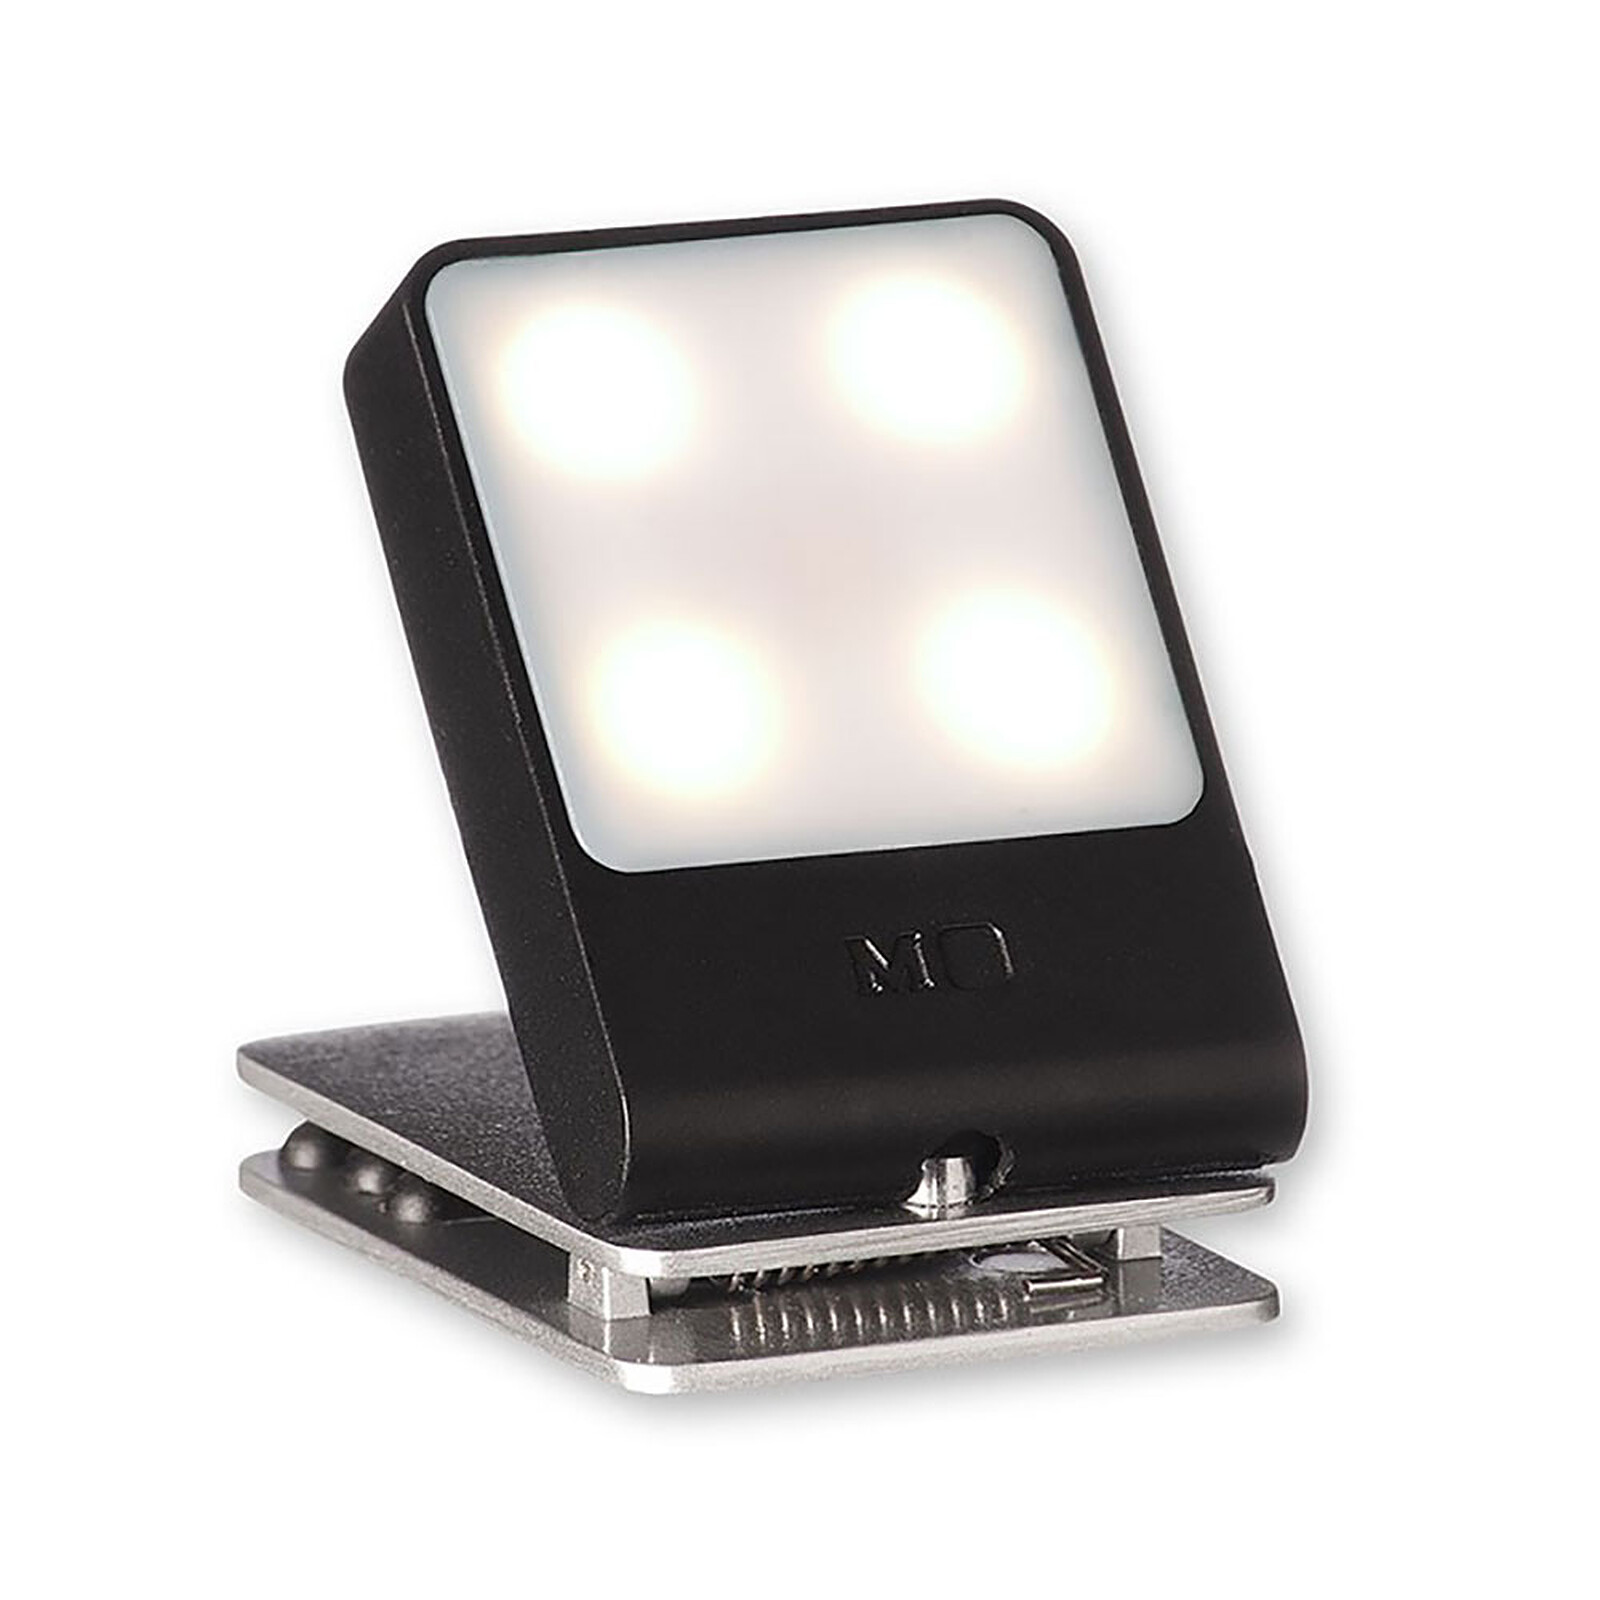 Lampe LED flexible sur port USB - Accessoires PC portable - Garantie 3 ans  LDLC